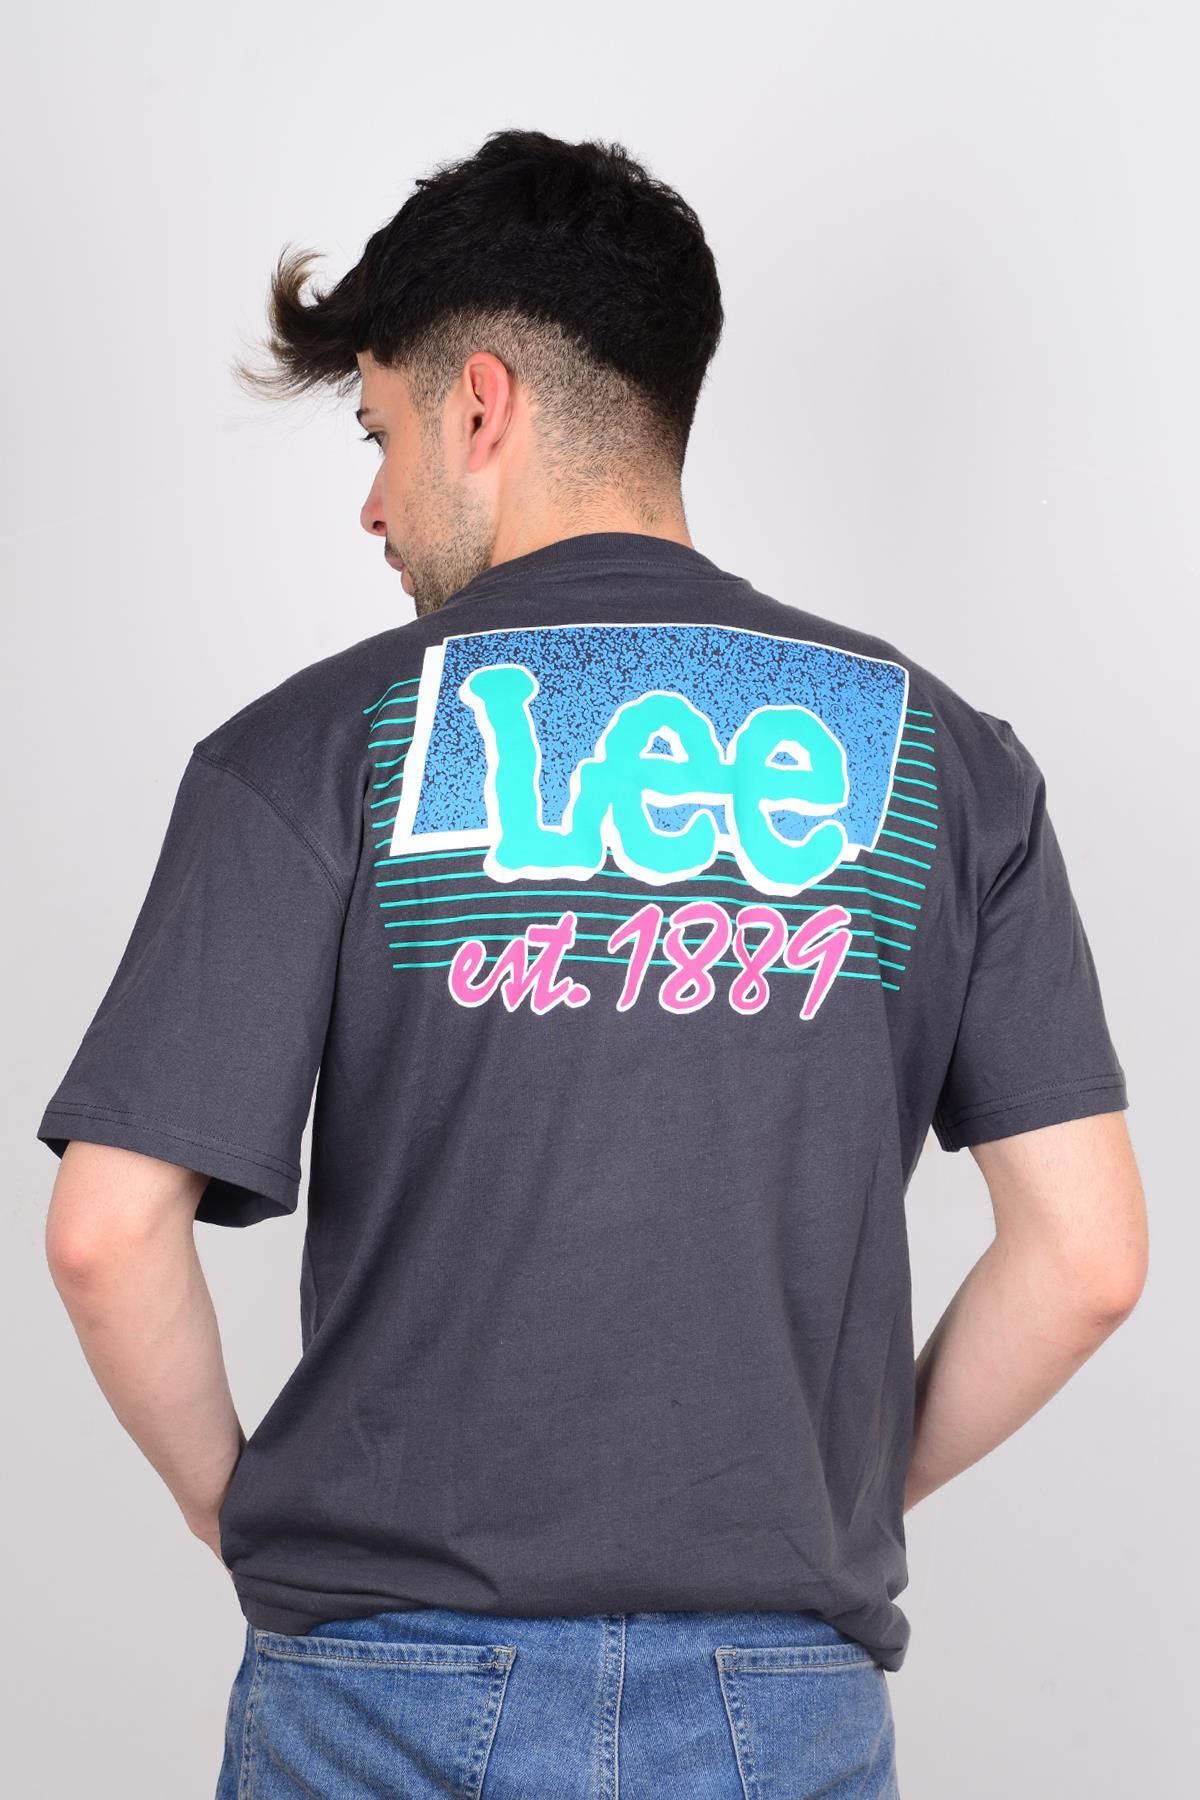 Lee LL10Feon Back بین تی شرت مردان دوچرخه شناخته شده است